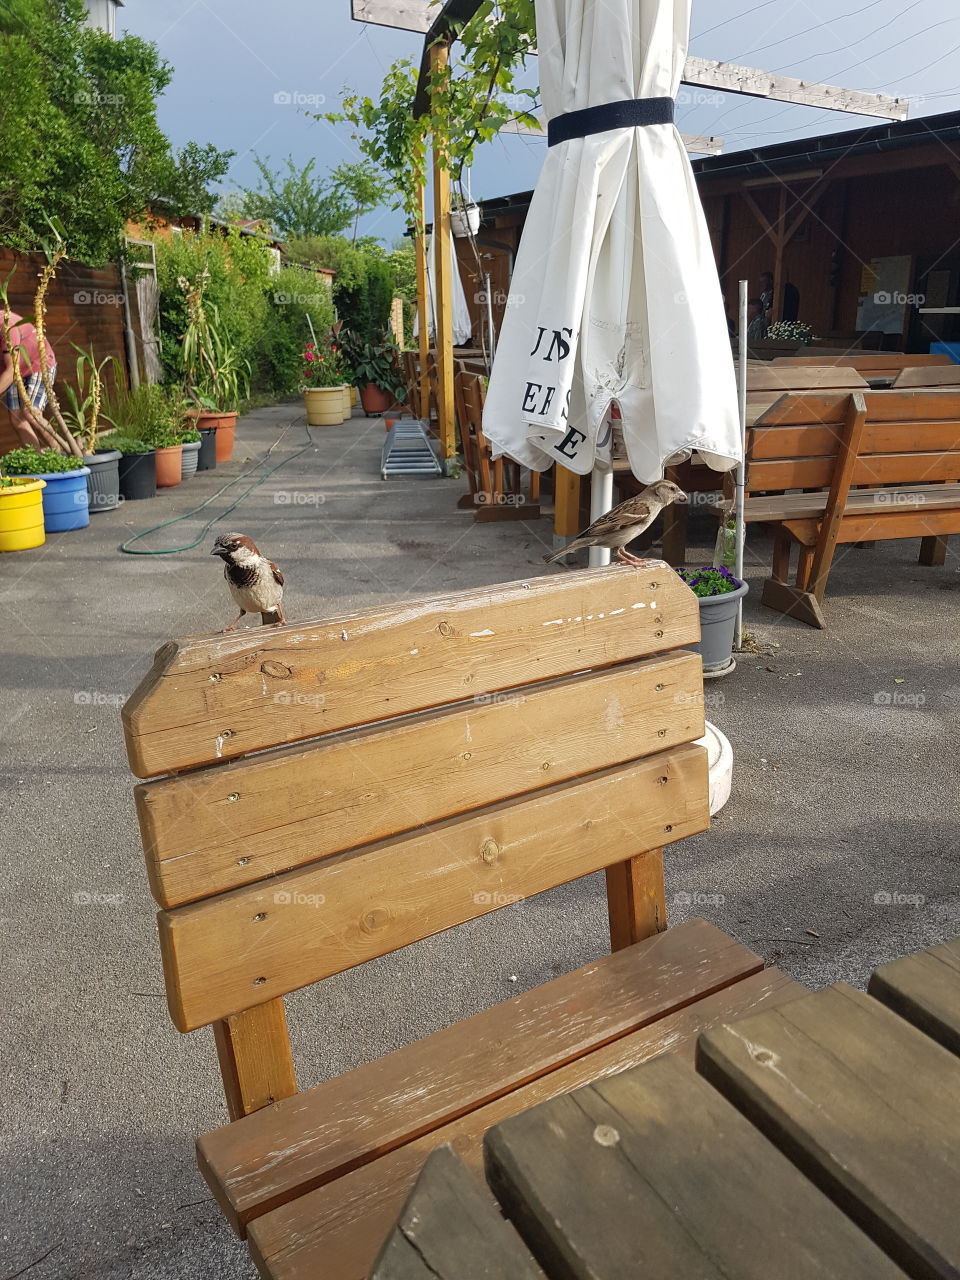 Bird on a seat